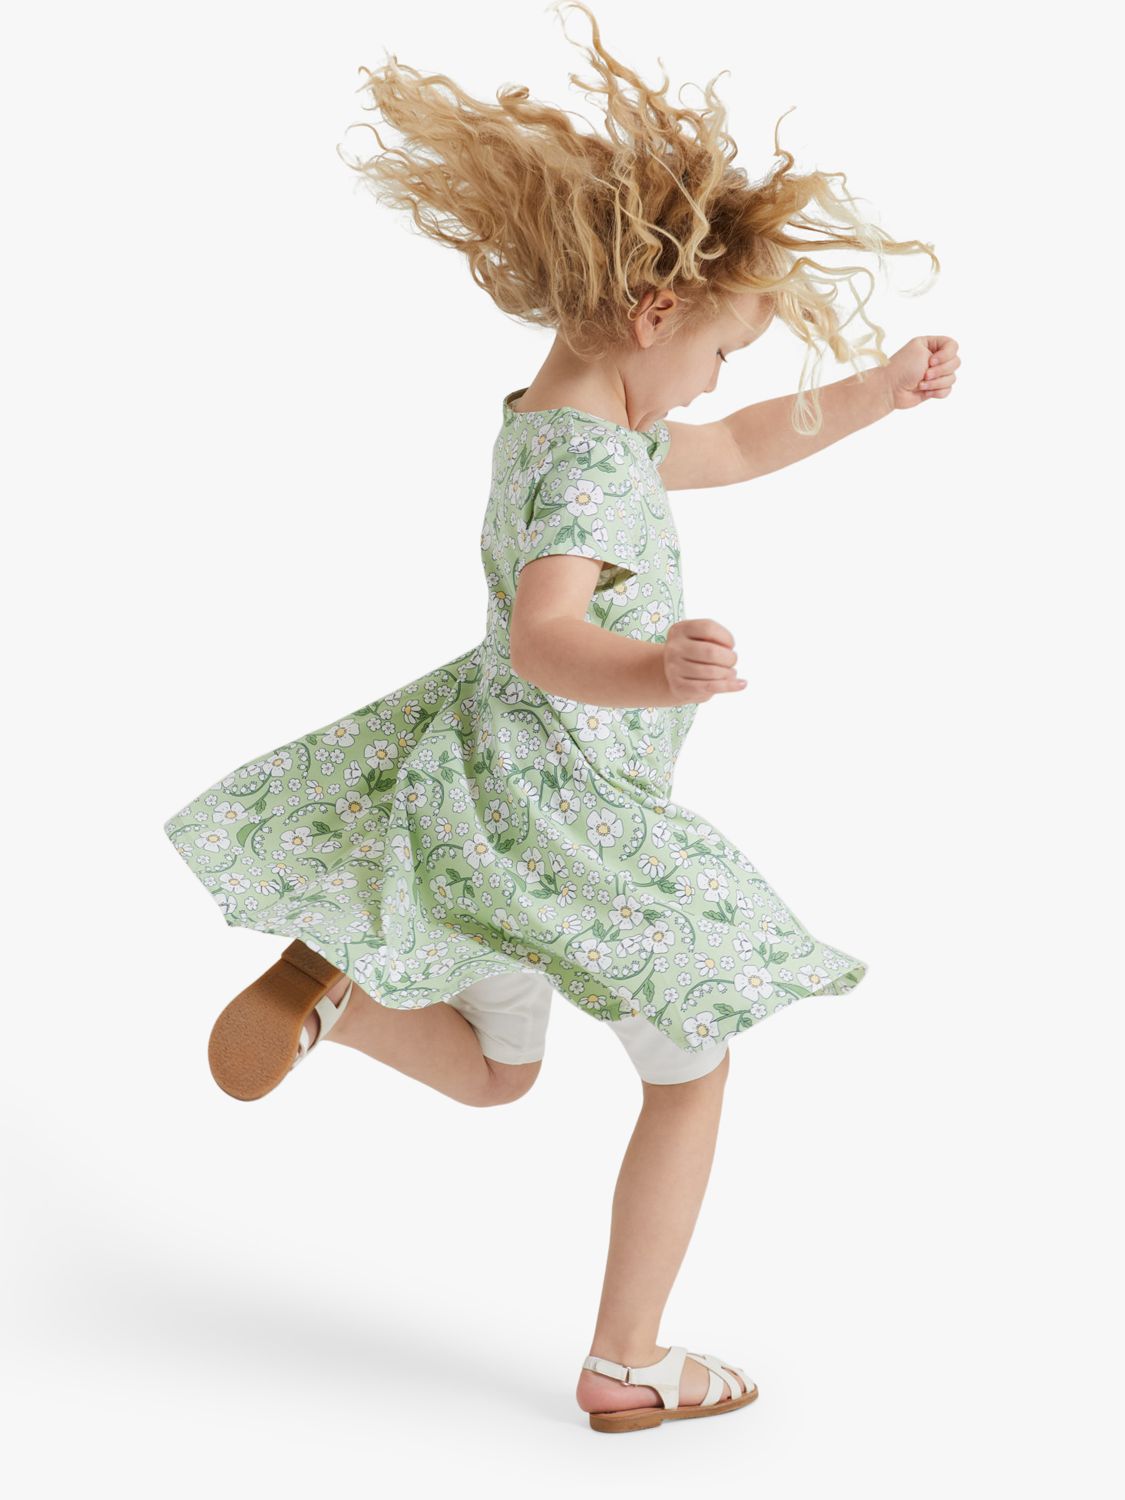 Polarn O. Pyret Kids' Organic Cotton Blend Daisy Print Dress, Green, 12-18 months